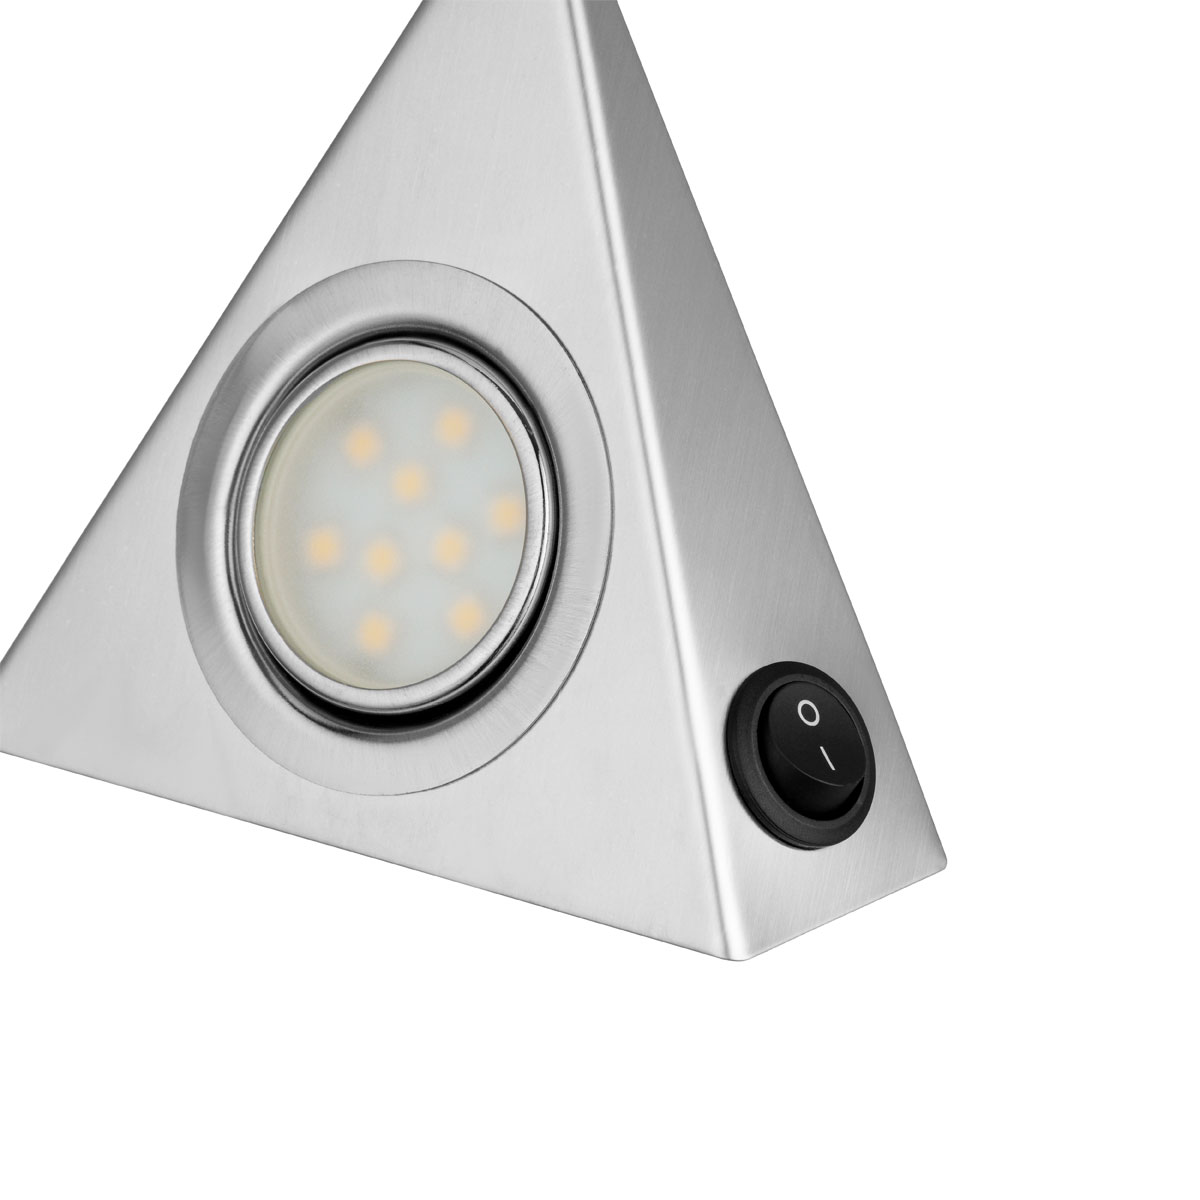 Schalter 502330 3 1,8W LED-Unterbauleuchte Ritter m TrianglePromo | x REV